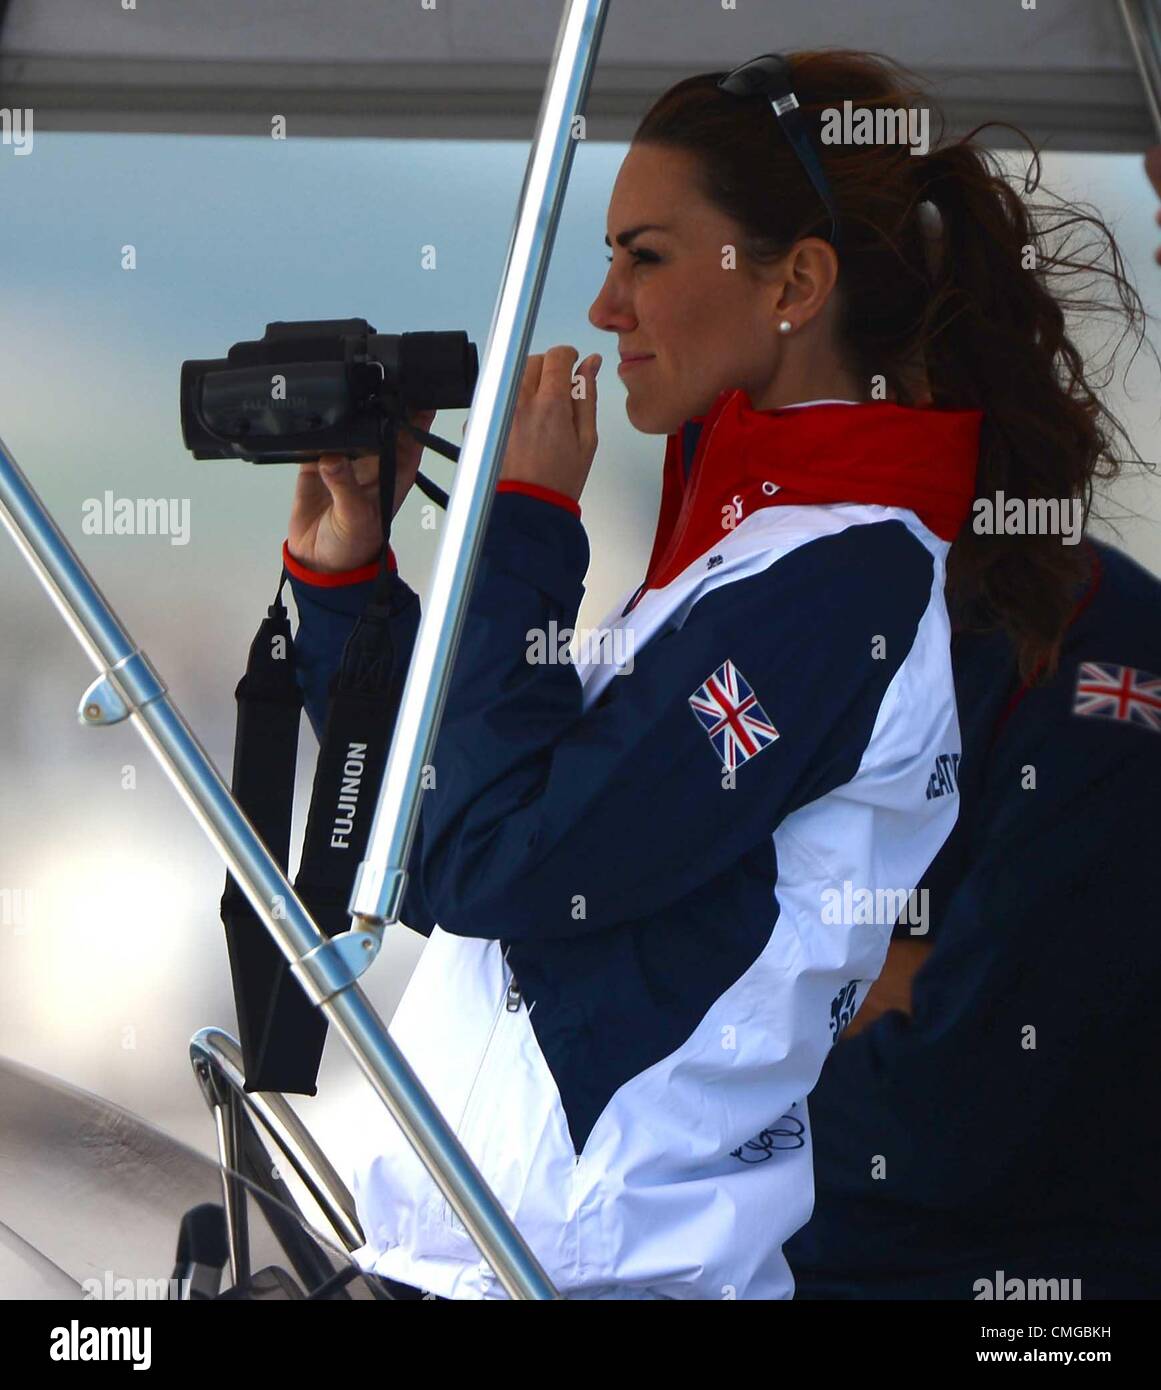 Juegos Olímpicos de Londres 2012, Kate Middleton visita el recinto olímpico de vela de los Juegos Olímpicos de Londres 2012 viendo la acción de Agosto 6th, 2012 Foto: DORSET MEDIA SERVICE Foto de stock